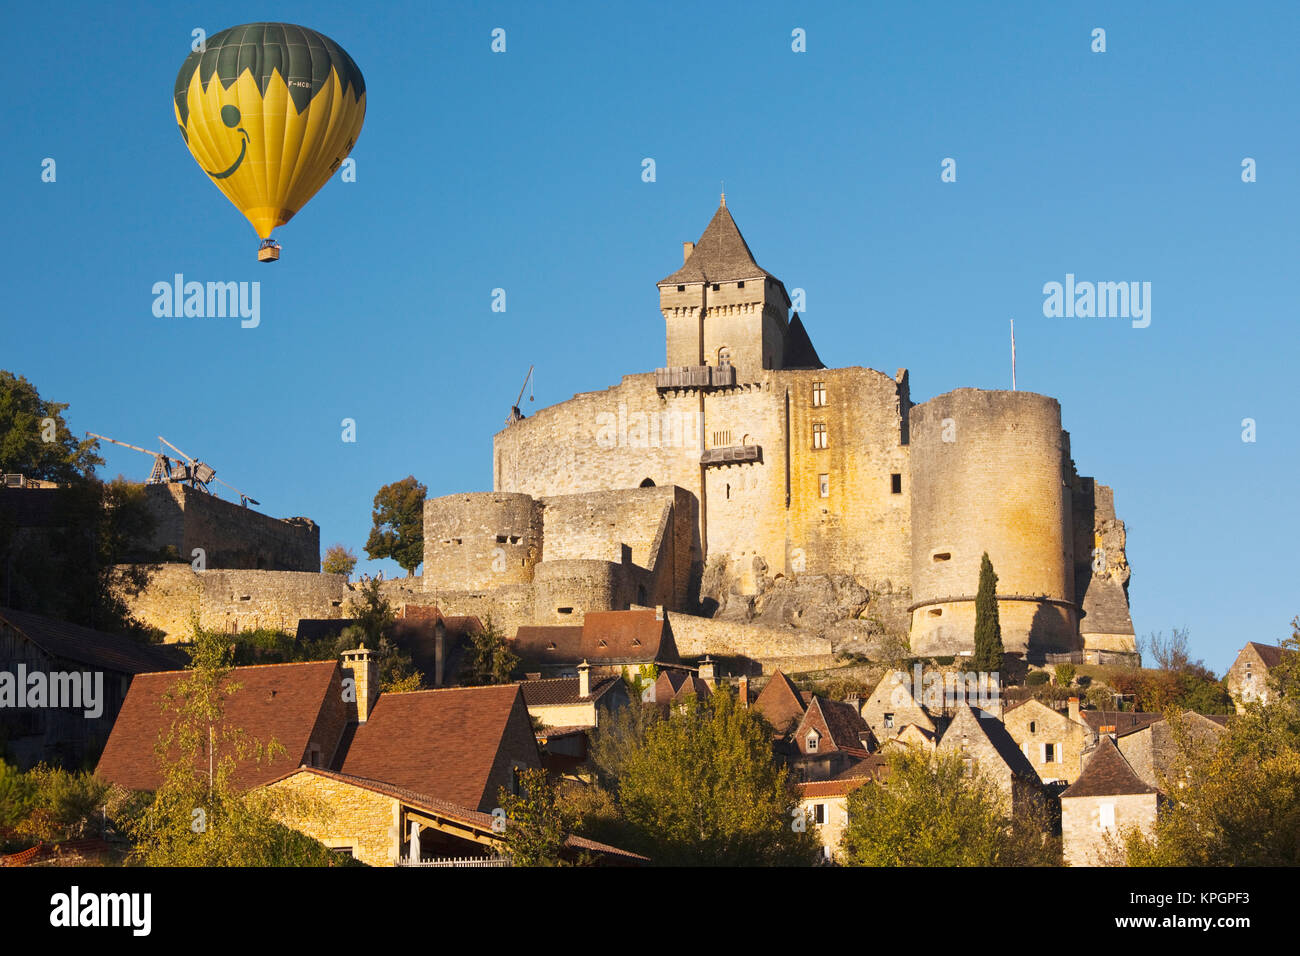 France, région Aquitaine, Département de la Dordogne, Castelnaud-la-Chapelle, château de Castelnaud, 13e siècle, avec ballon à air chaud Banque D'Images